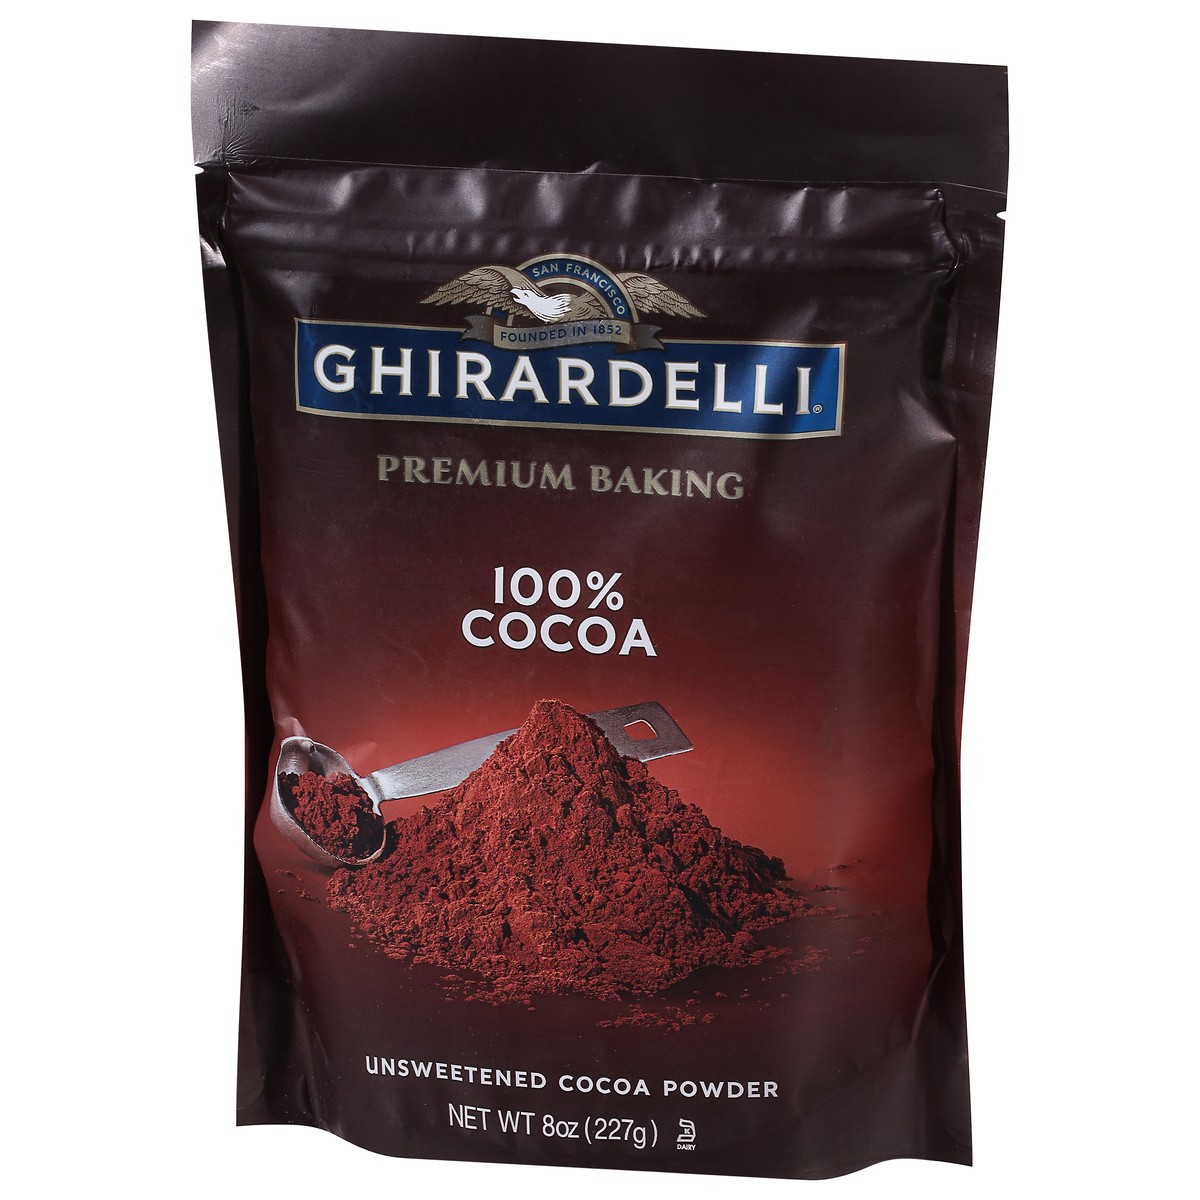 slide 3 of 9, GHIRARDELLI Premium Baking Cocoa 100% Unsweetened Cocoa Powder, 8 oz Bag, 8 oz